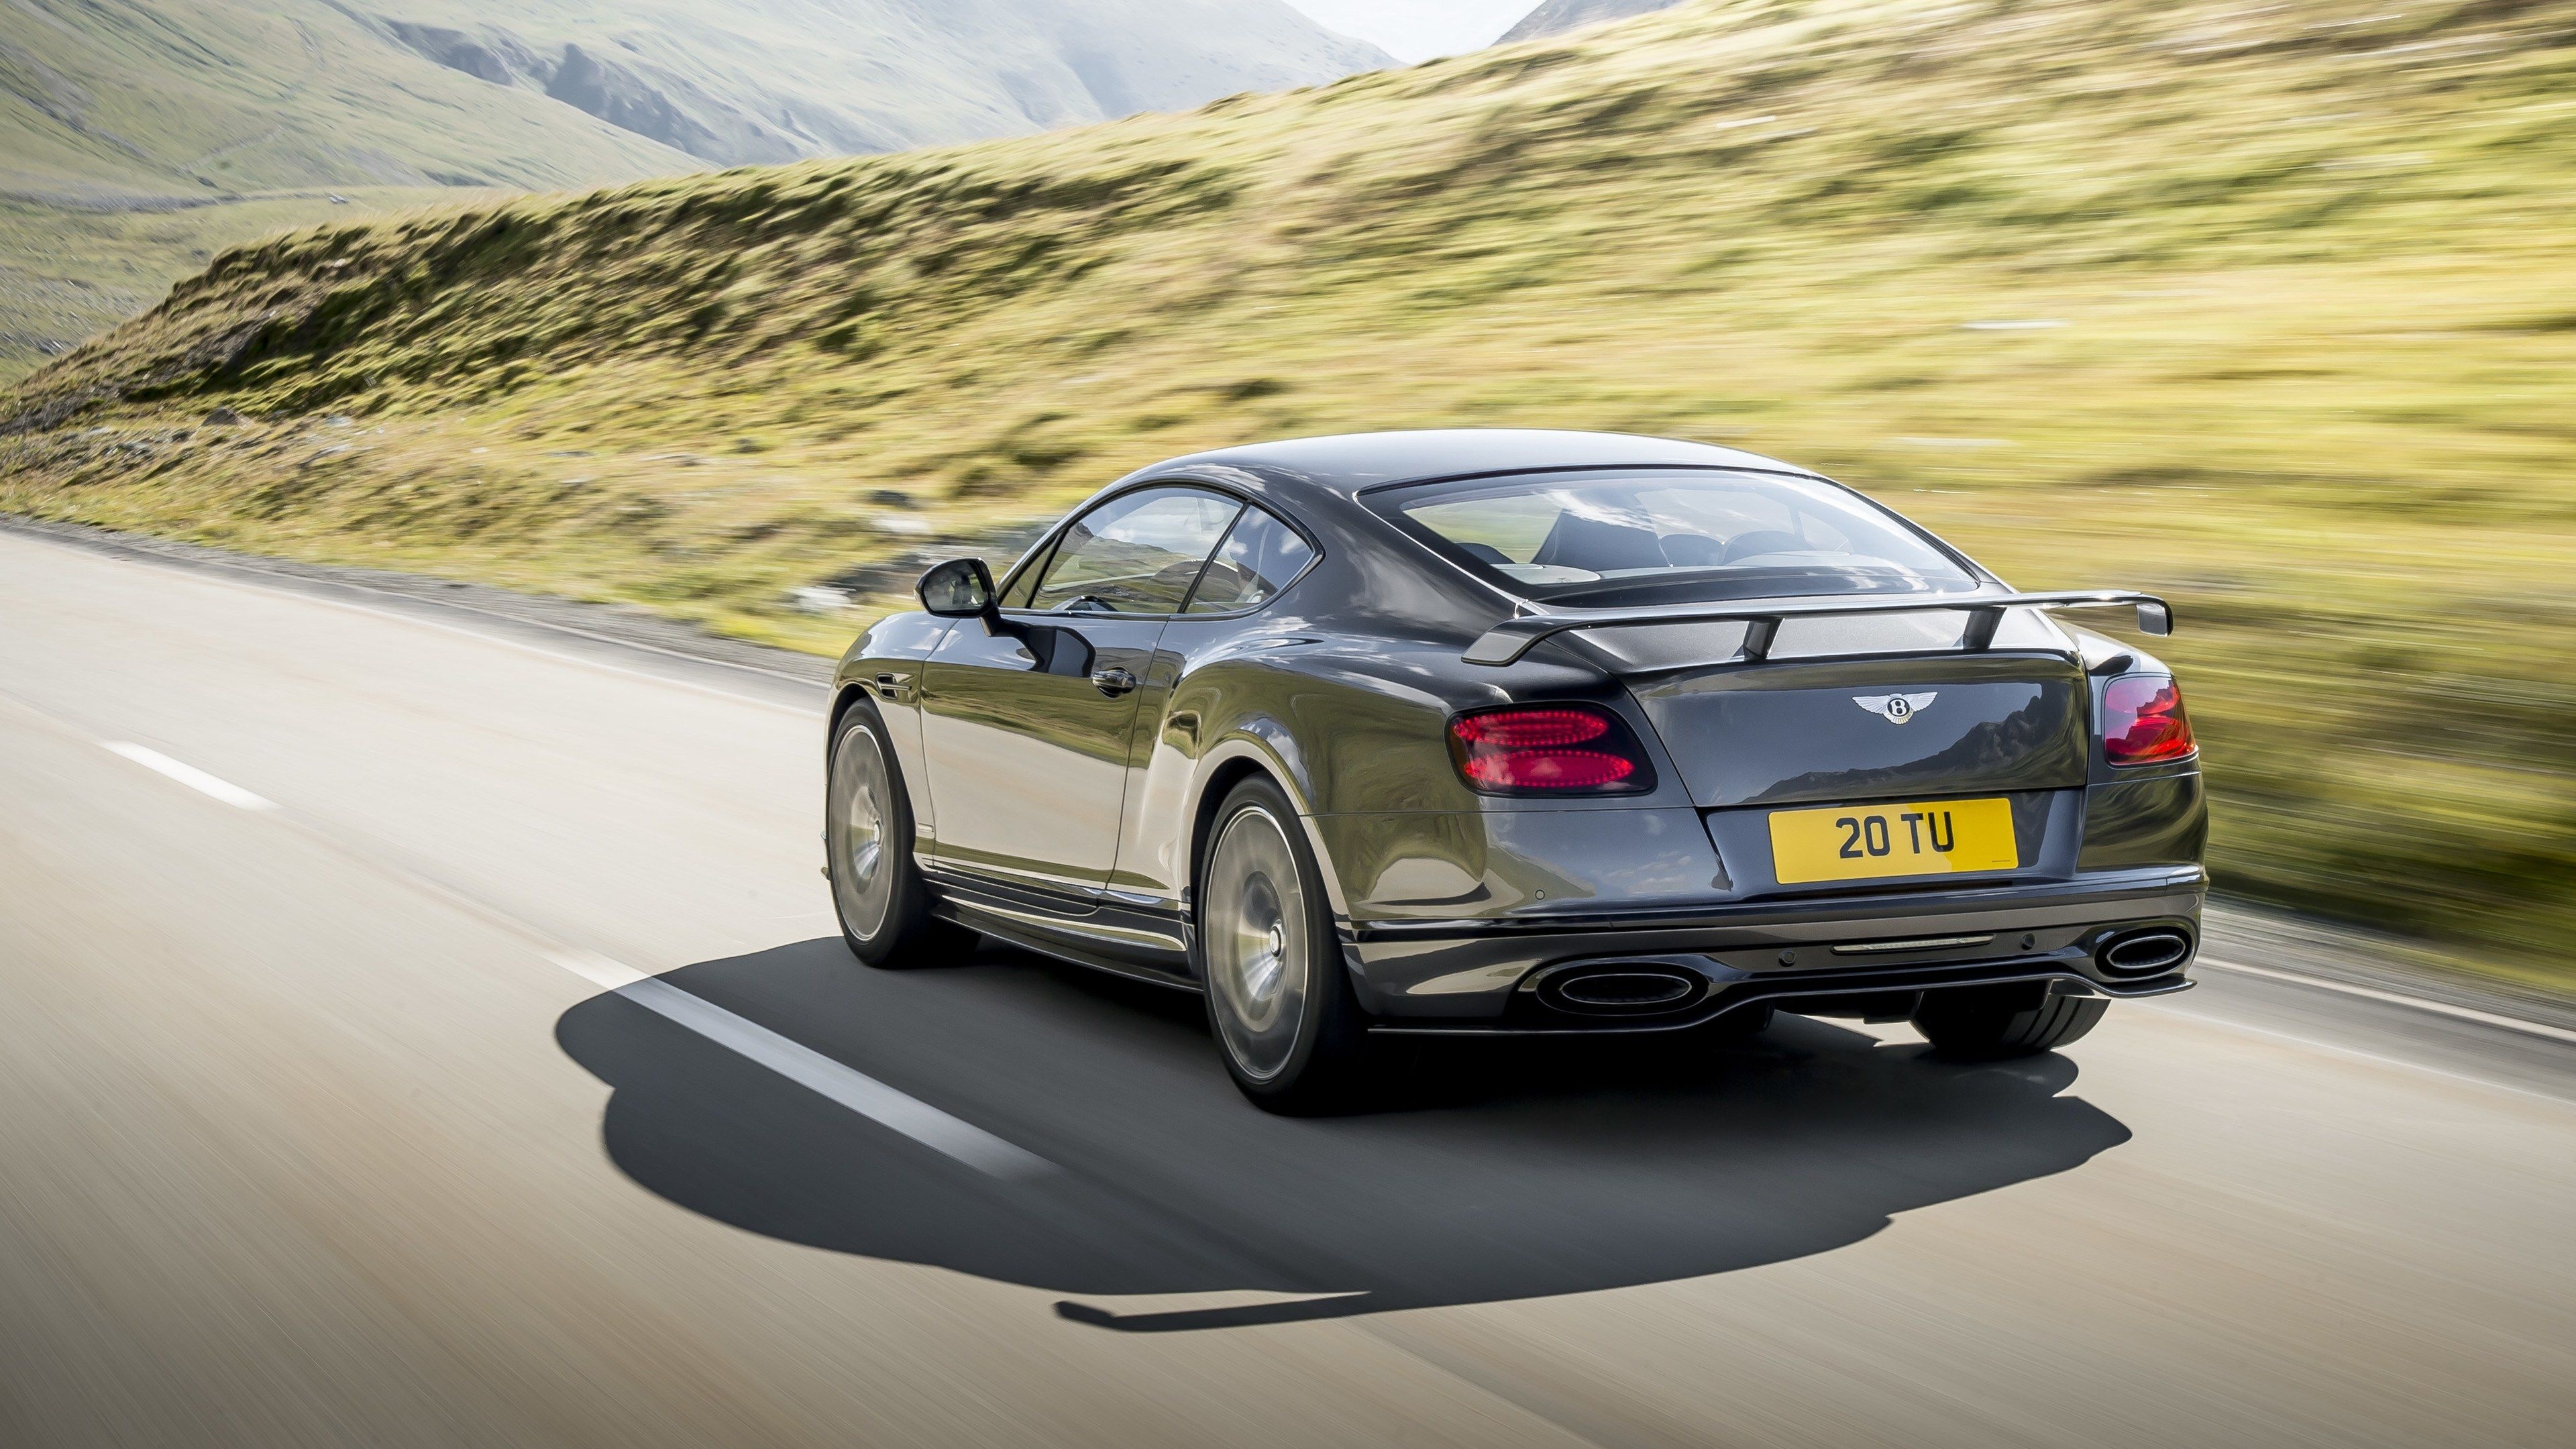 Bentley Continental GT (Auto), Supersport edition, Rear HD wallpapers, Bentley luxury, 3840x2160 4K Desktop